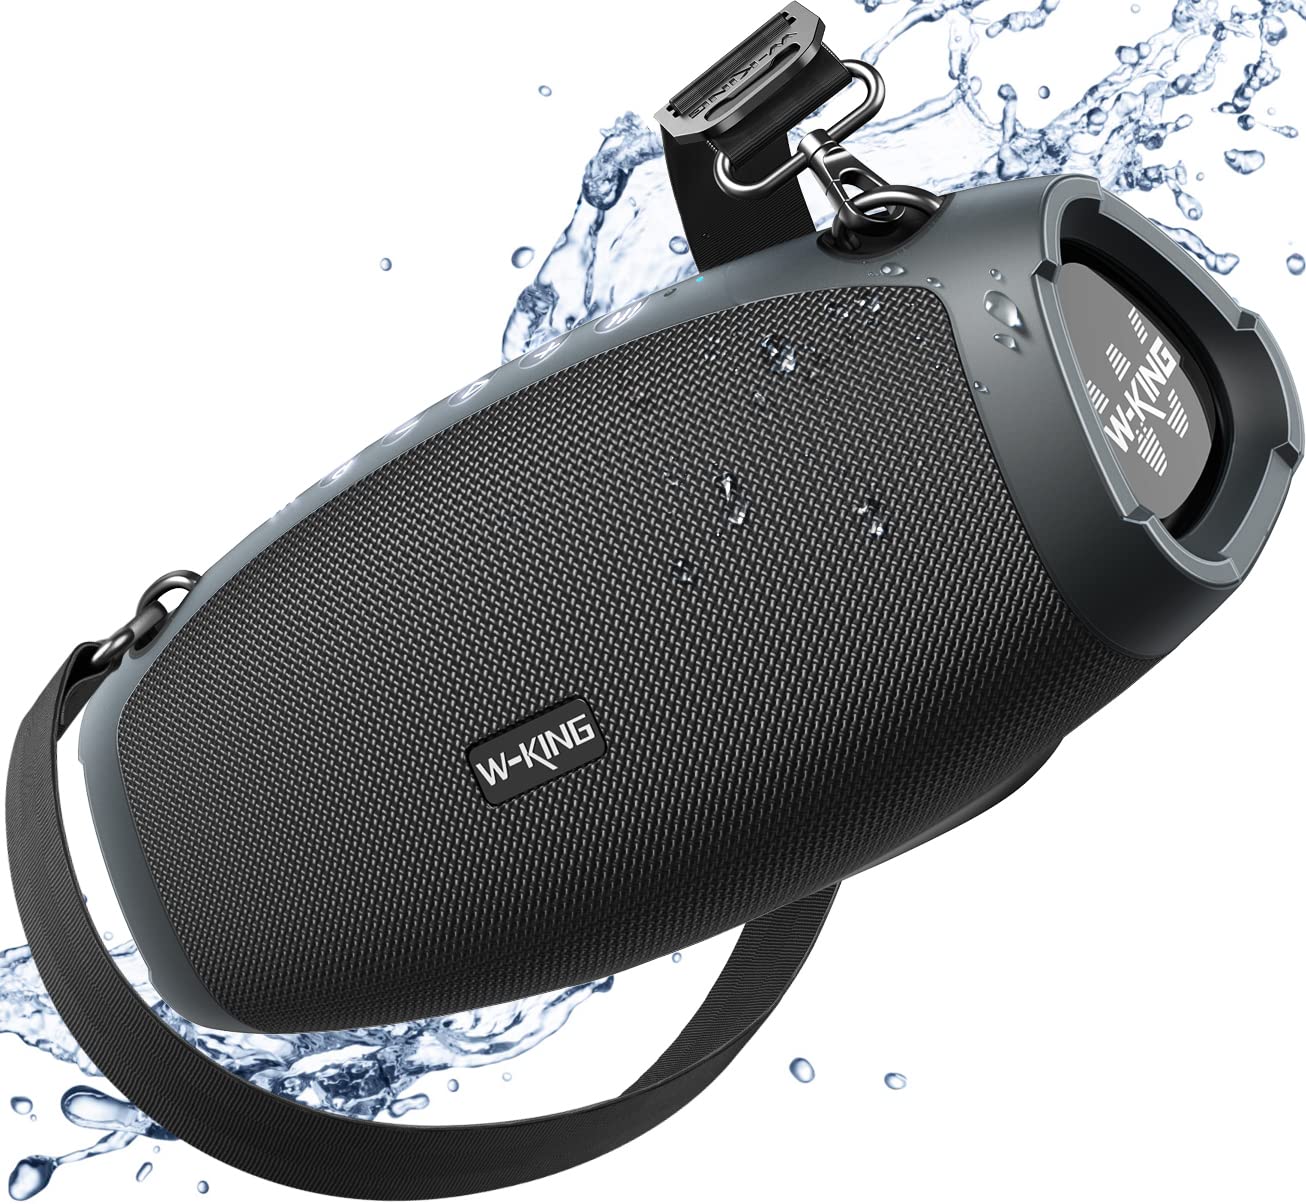  W-KING サブウーファー付きポータブル大音量Bluetoothスピーカー、70WポータブルアウトドアスピーカーBluetoothワイヤレス防水、トリプルパッシブラジエ...